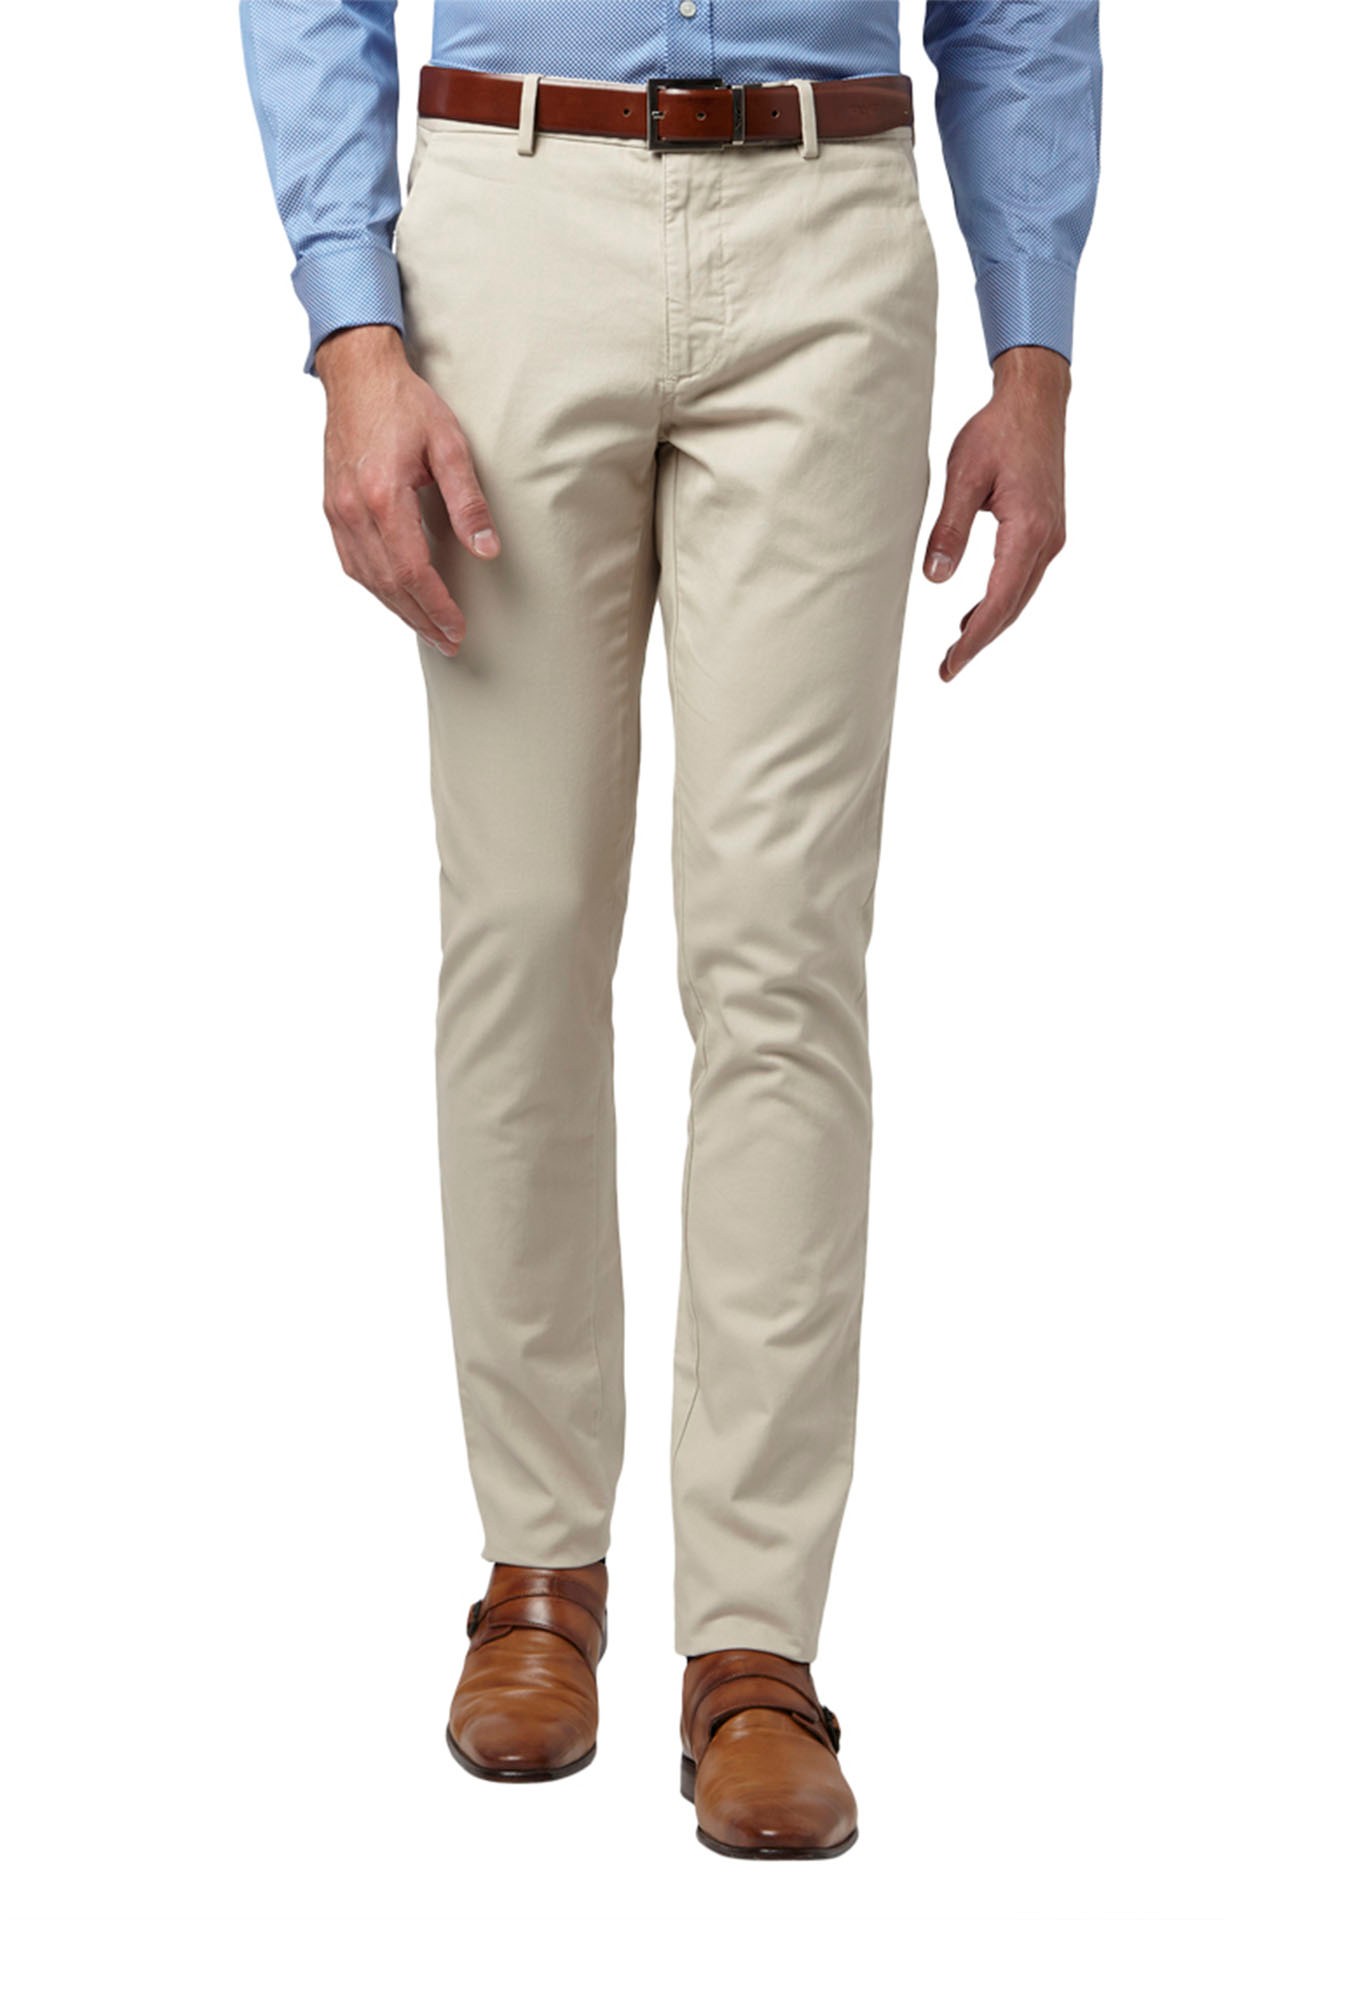 Buy Park Avenue Khaki Regular Fit Trousers for Men Online  Tata CLiQ